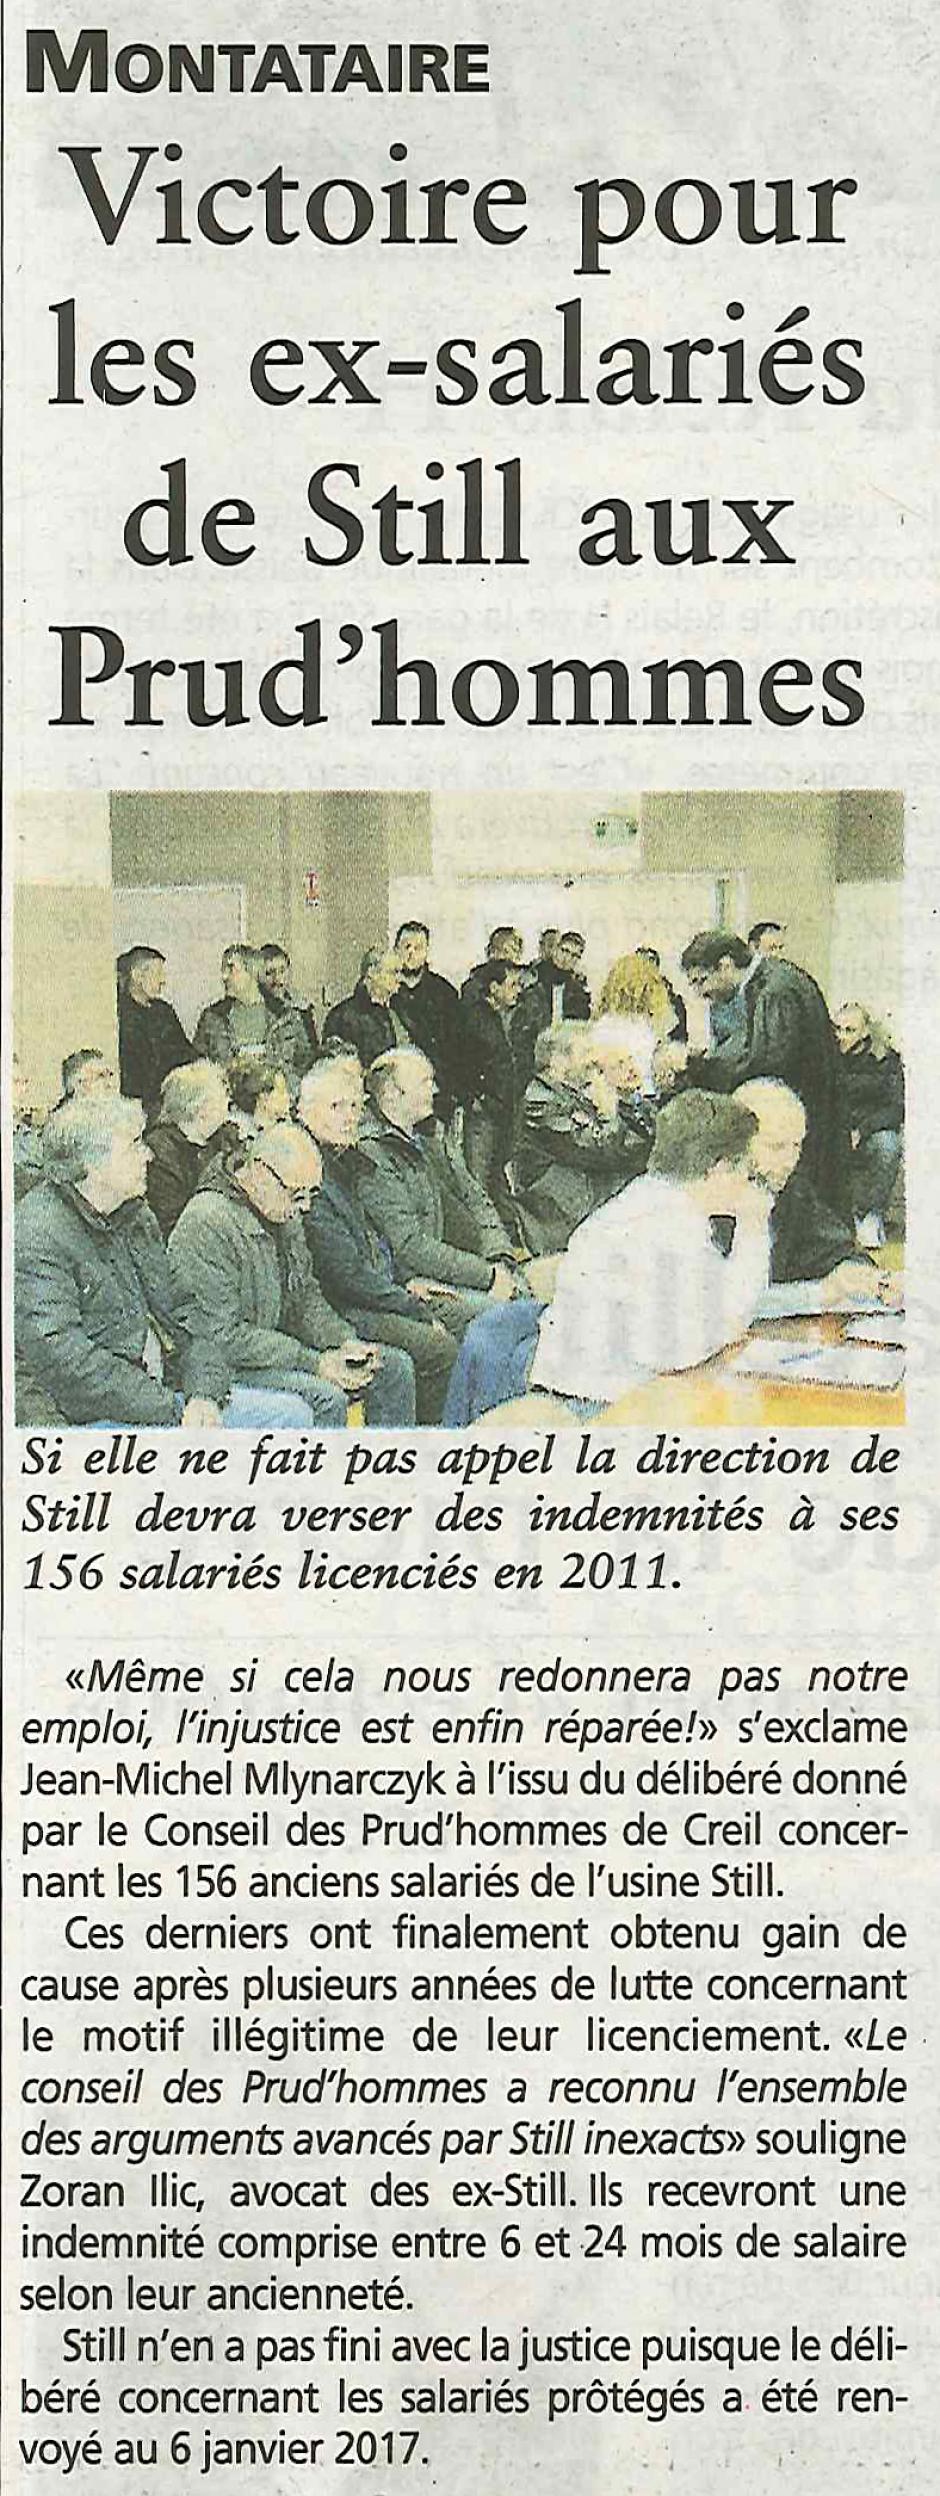 20160921-OH-Montataire-Victoire pour les ex-salariés de Still aux prud'hommes